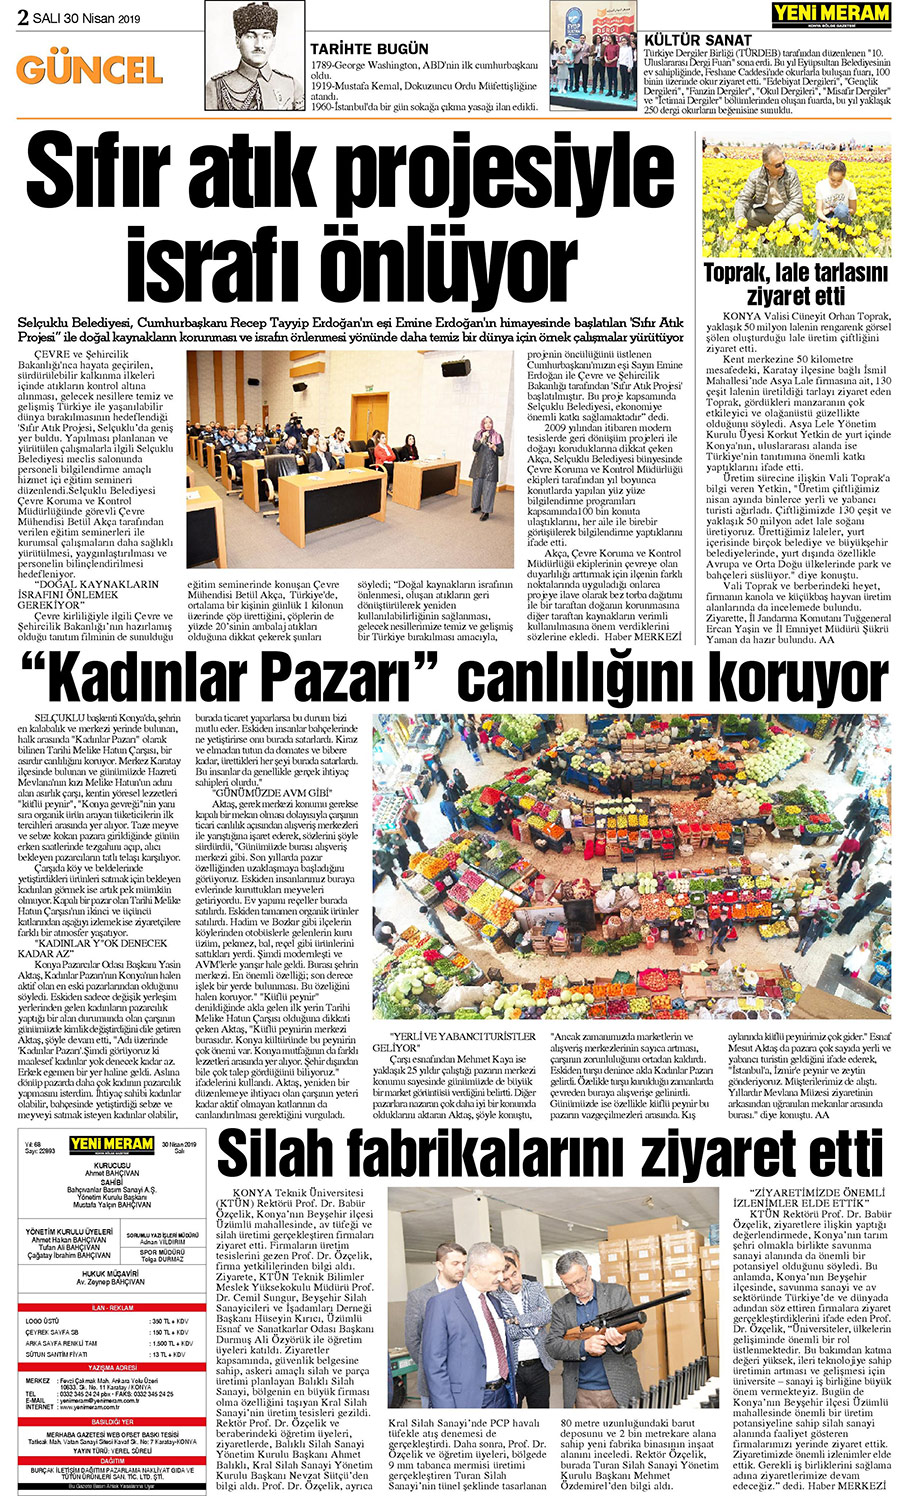 30 Nisan 2019 Yeni Meram Gazetesi